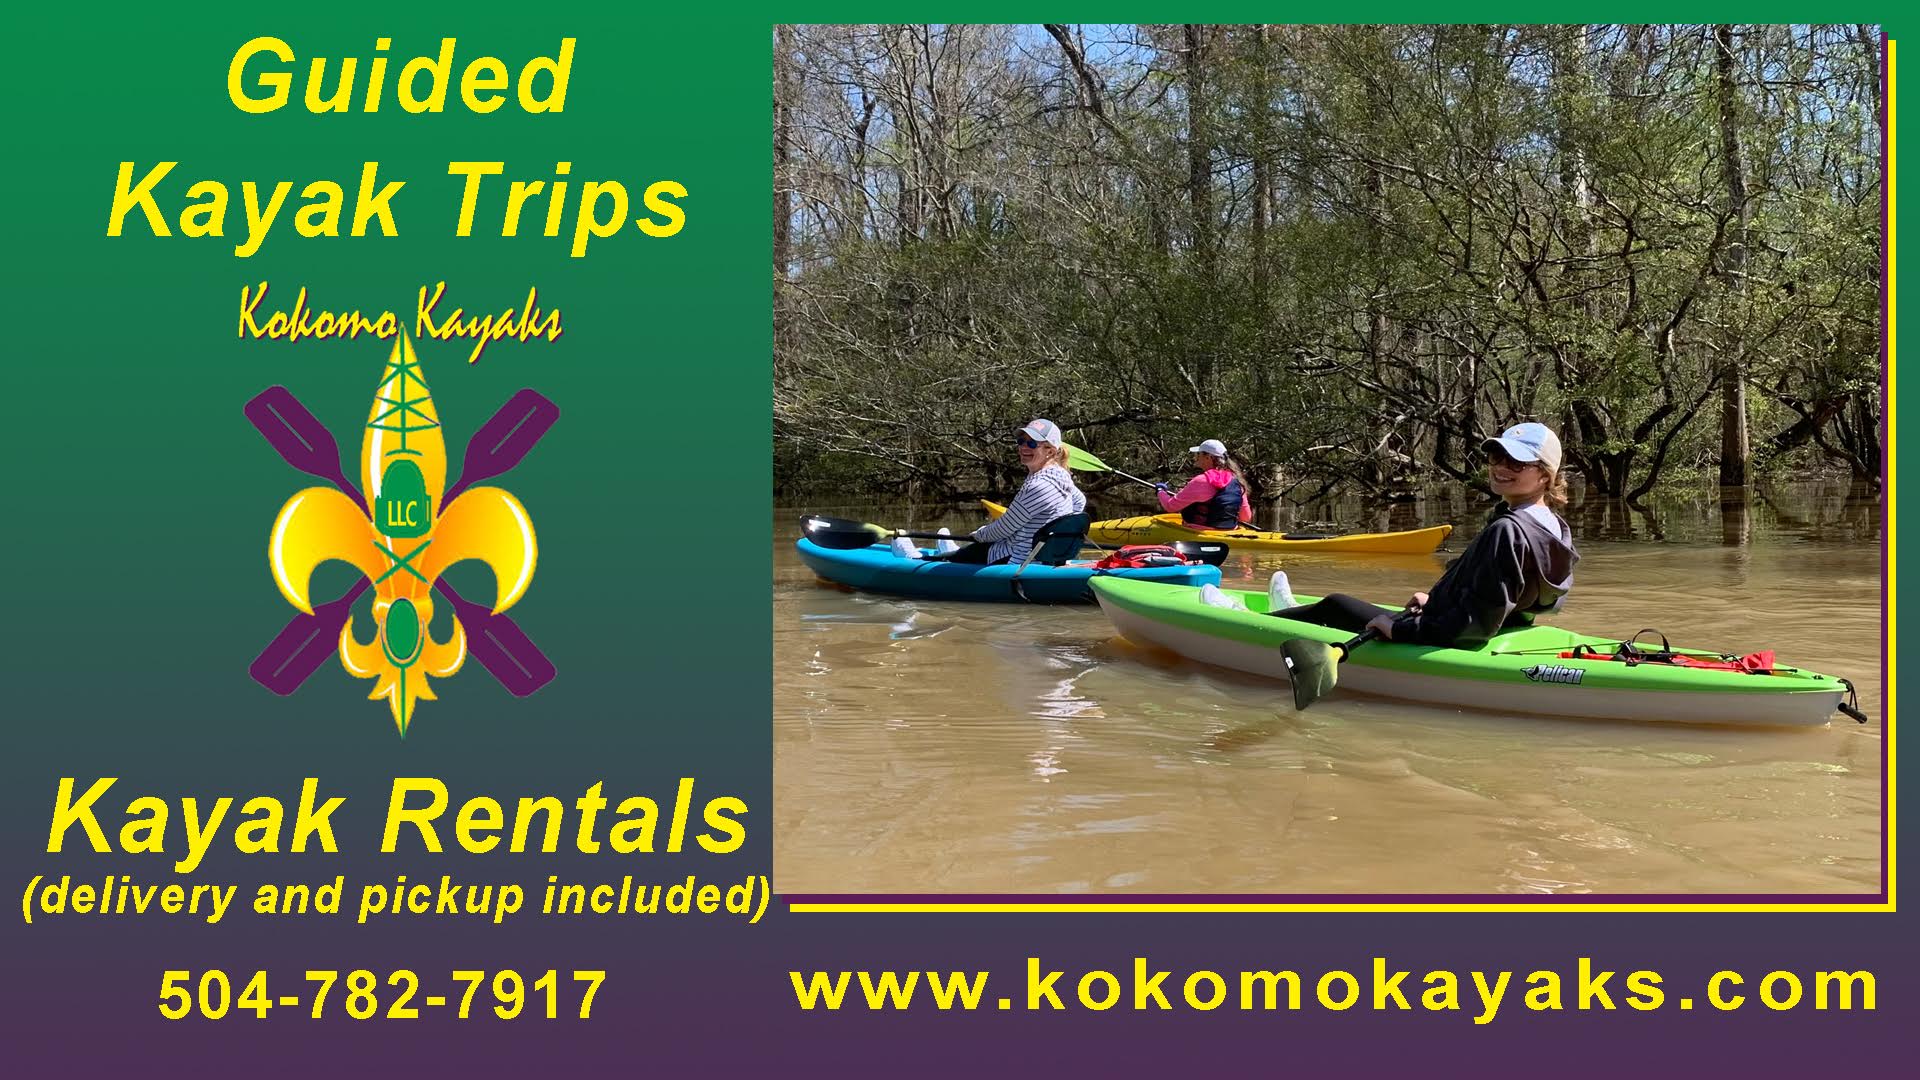 Kokomo Kayaks